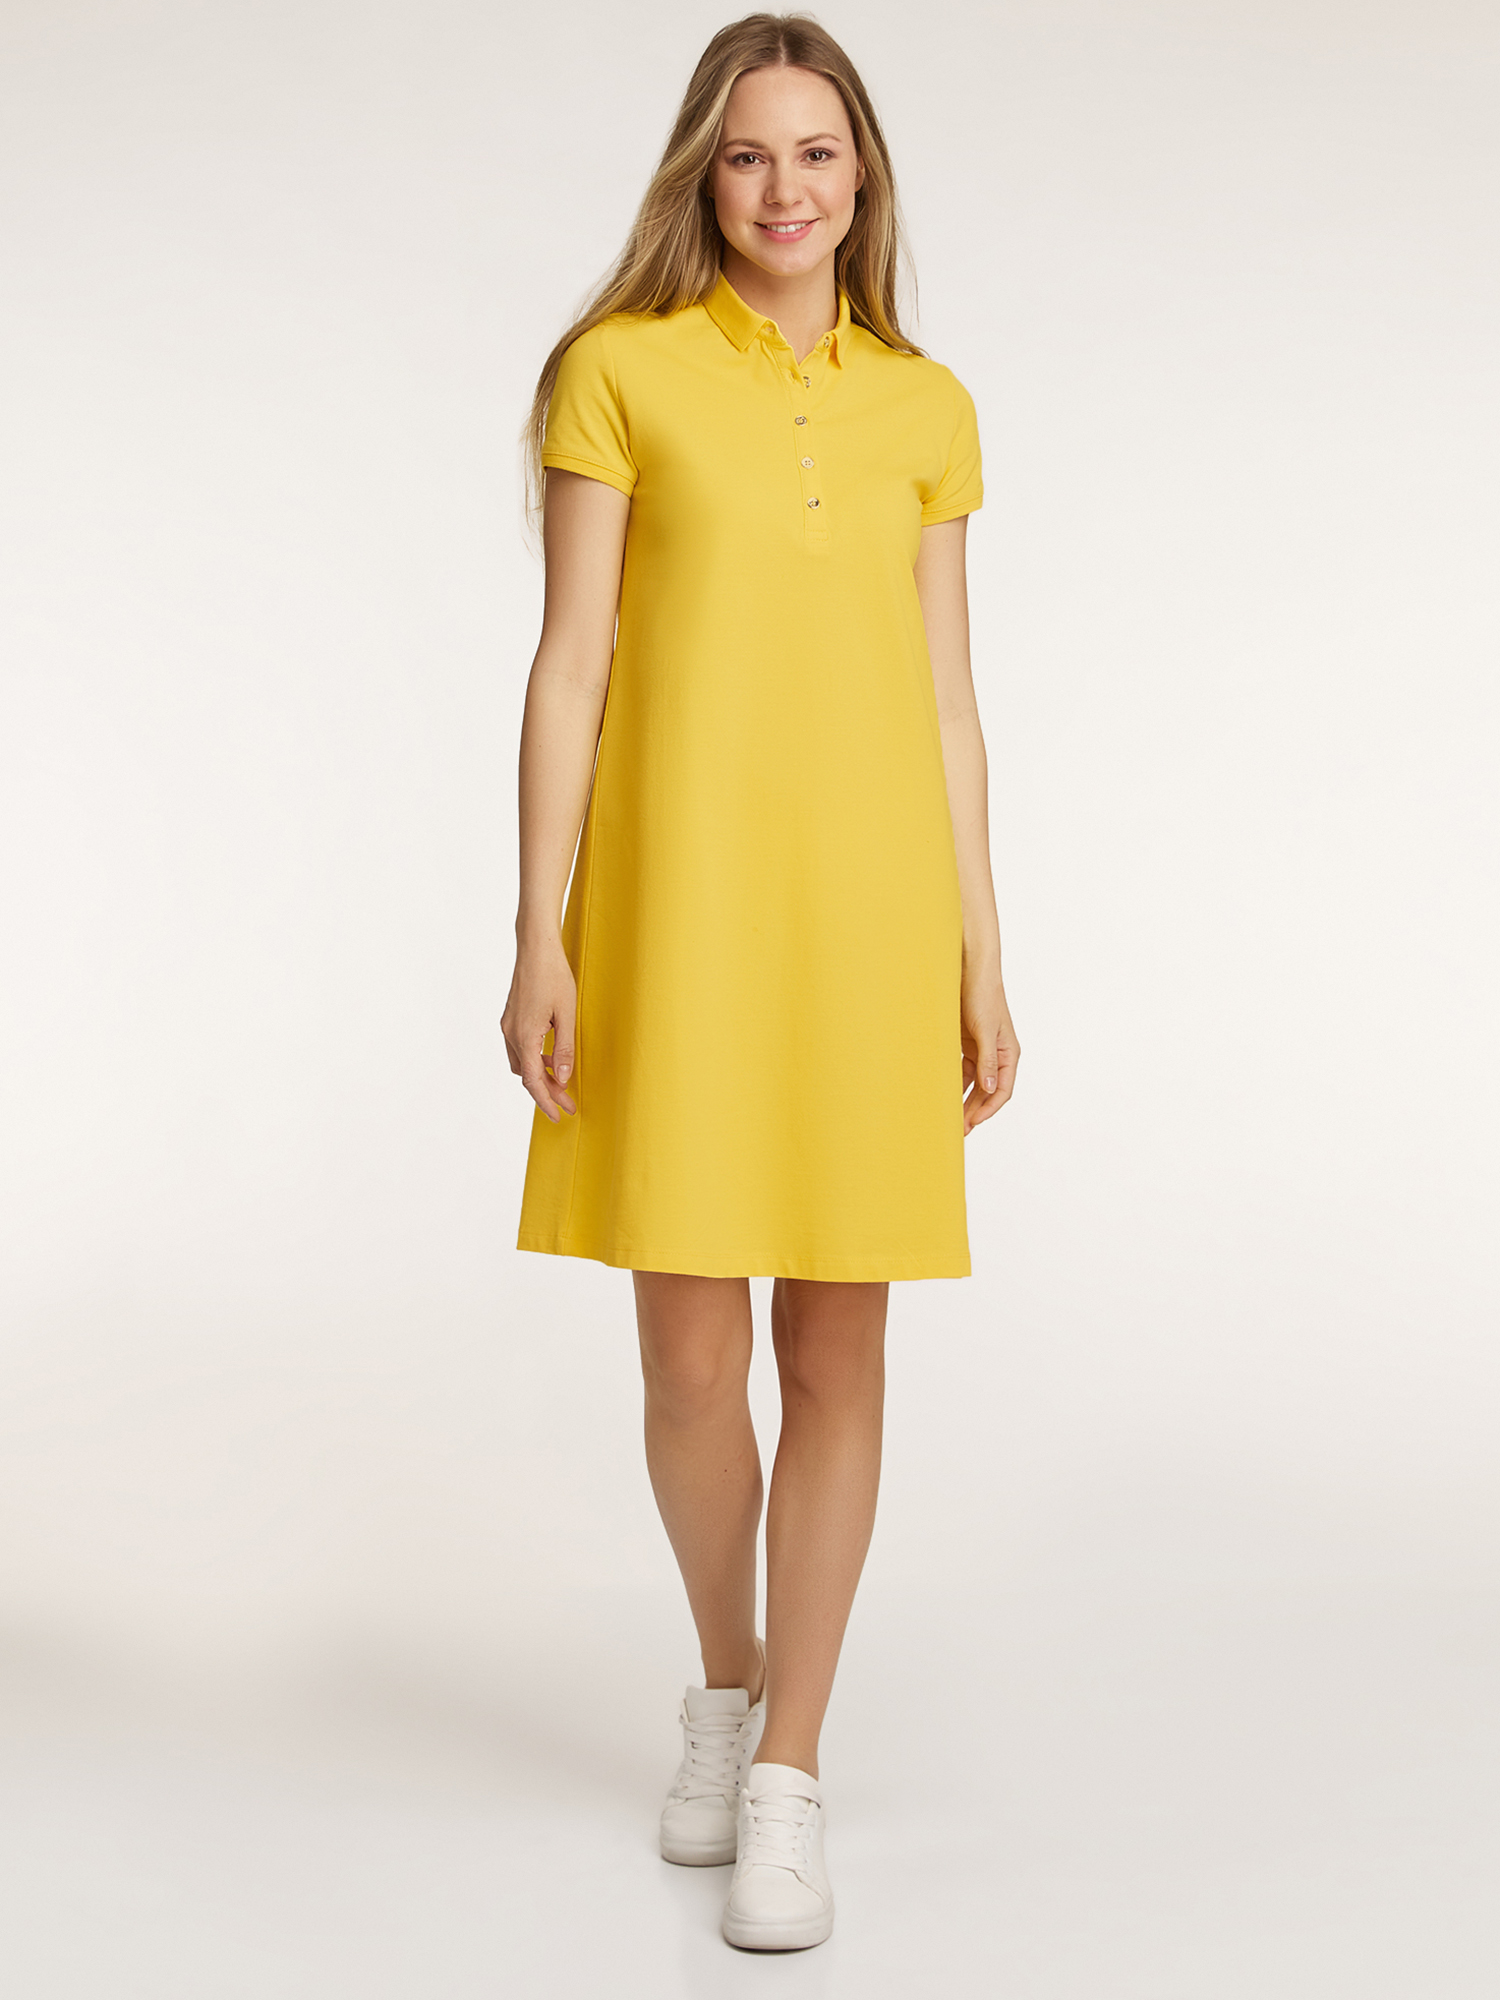 Платье женское oodji 24001118-4B желтое M